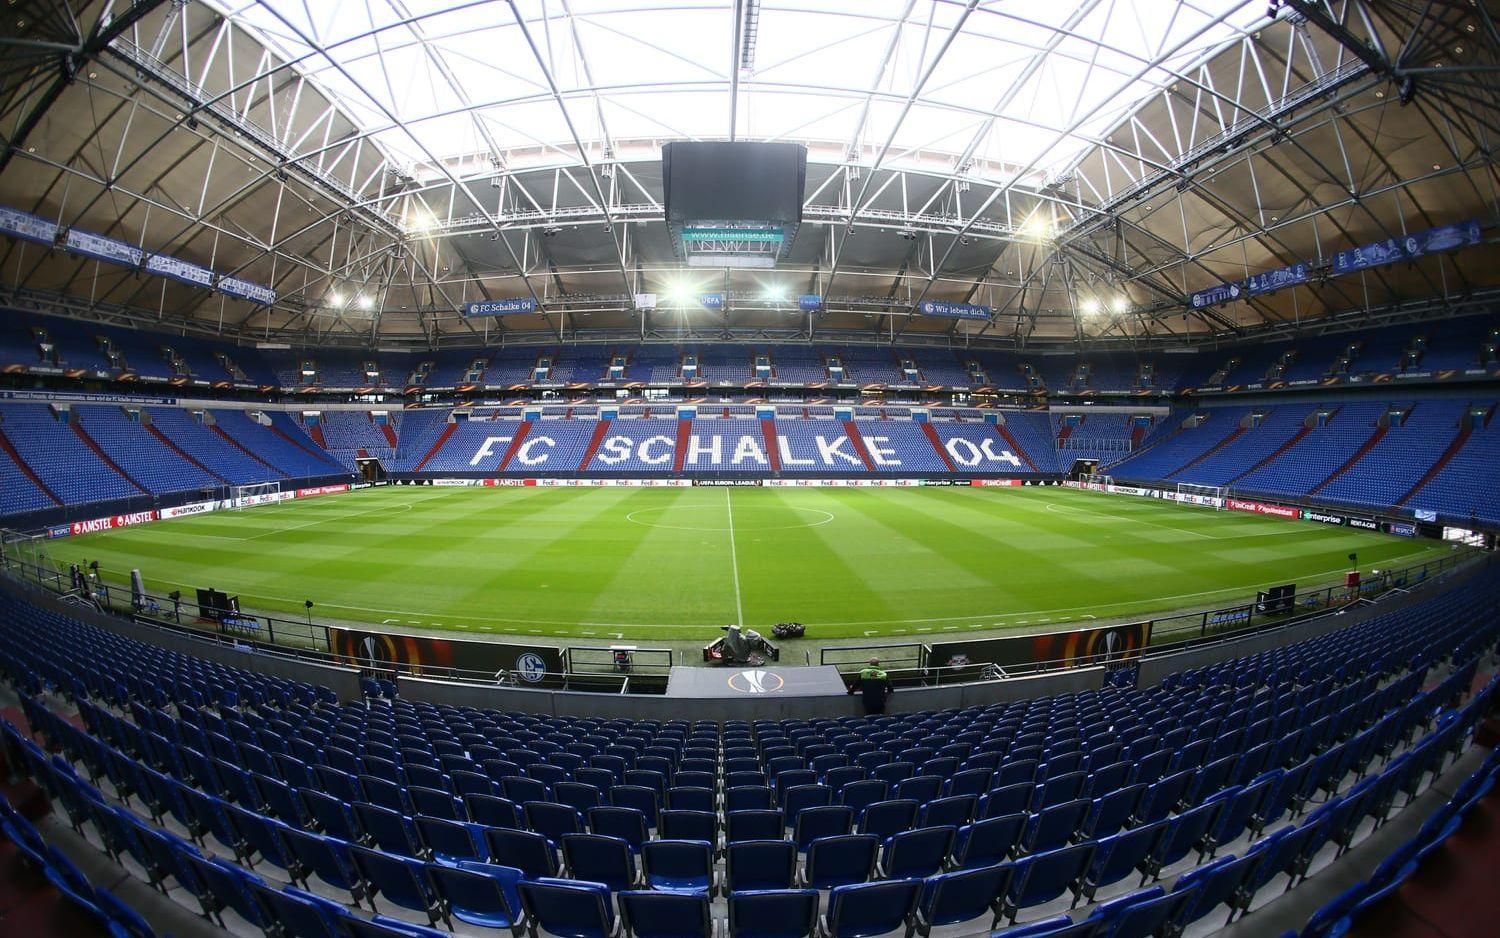 17. Veltins-Arena där Schalke spelar tar in 62 271 åskådare.